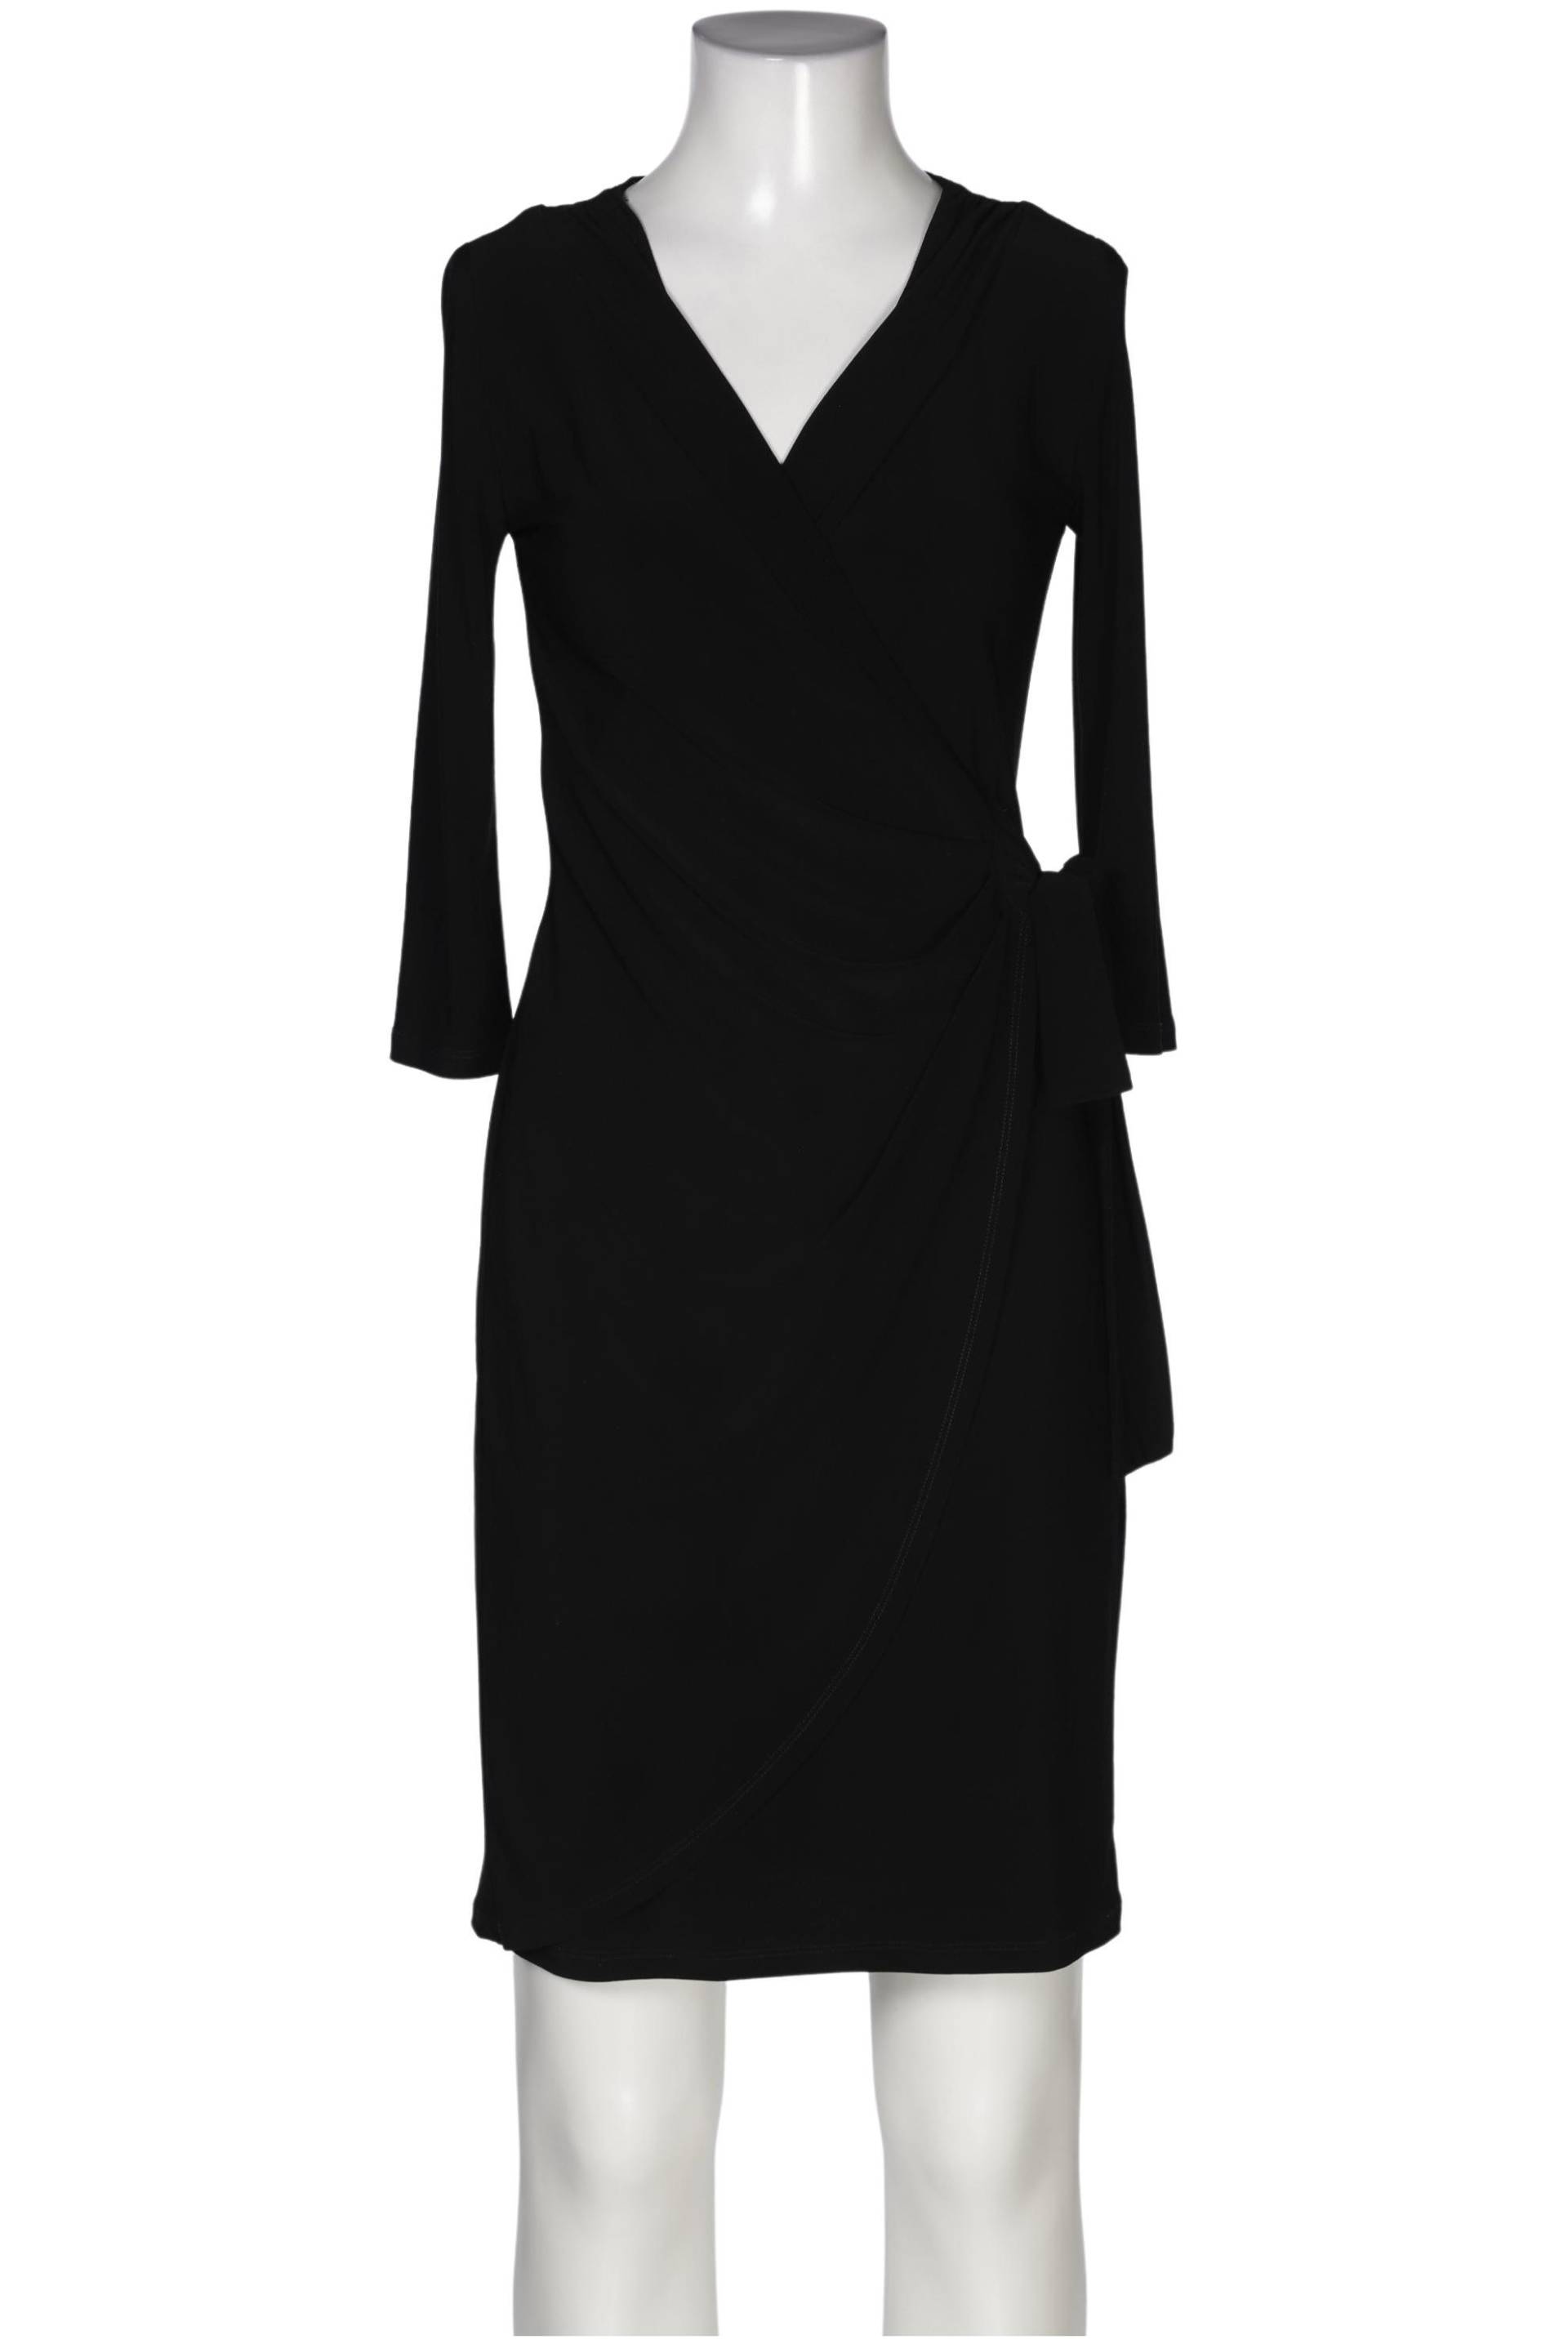 Joseph Ribkoff Damen Kleid, schwarz, Gr. 34 von Joseph Ribkoff